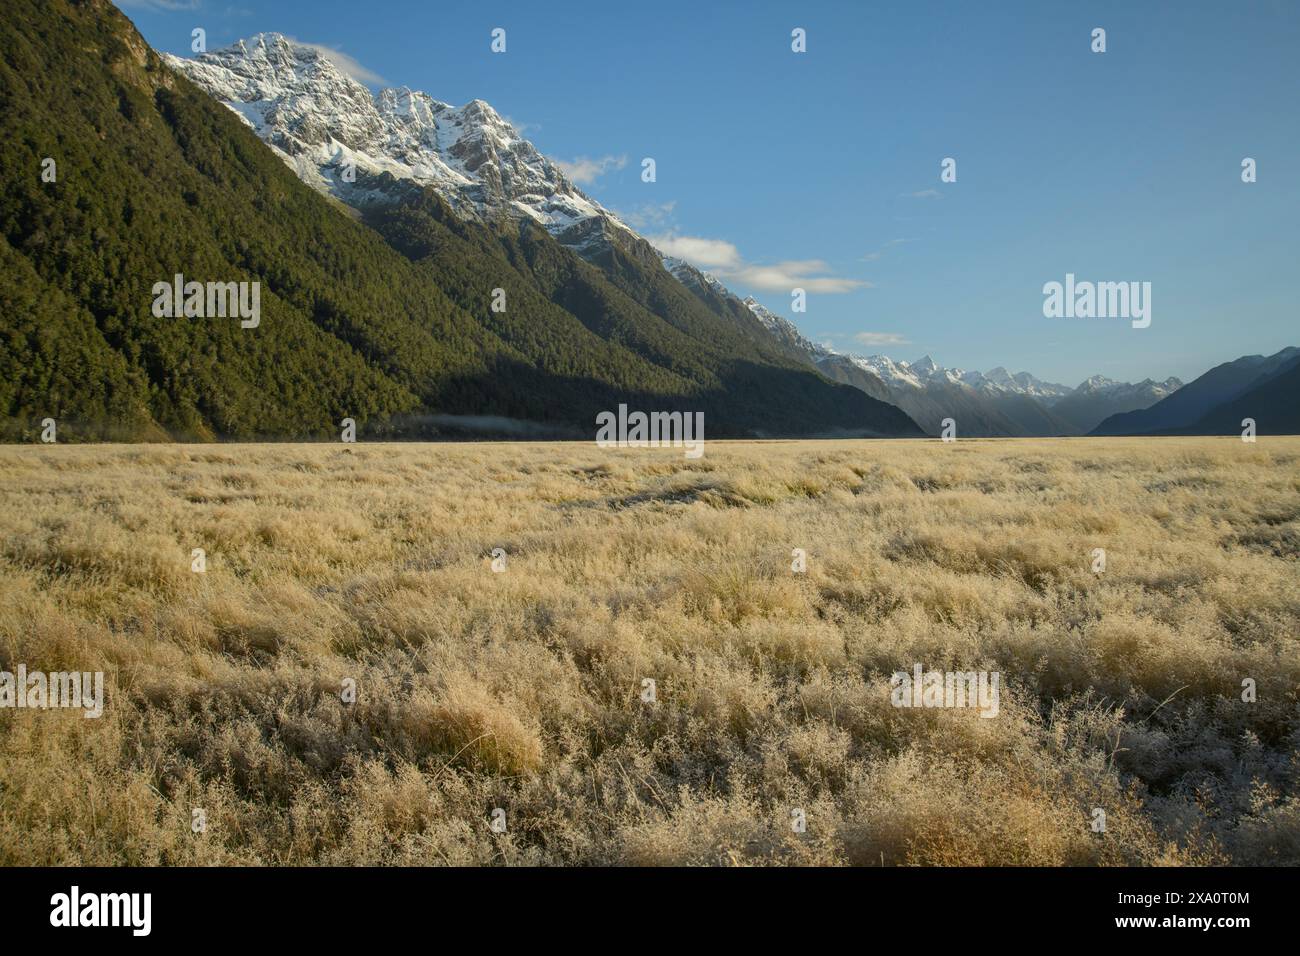 New Zealand; South Island, Fiordland National Park, UNESCO World Heritage, grassland Stock Photo